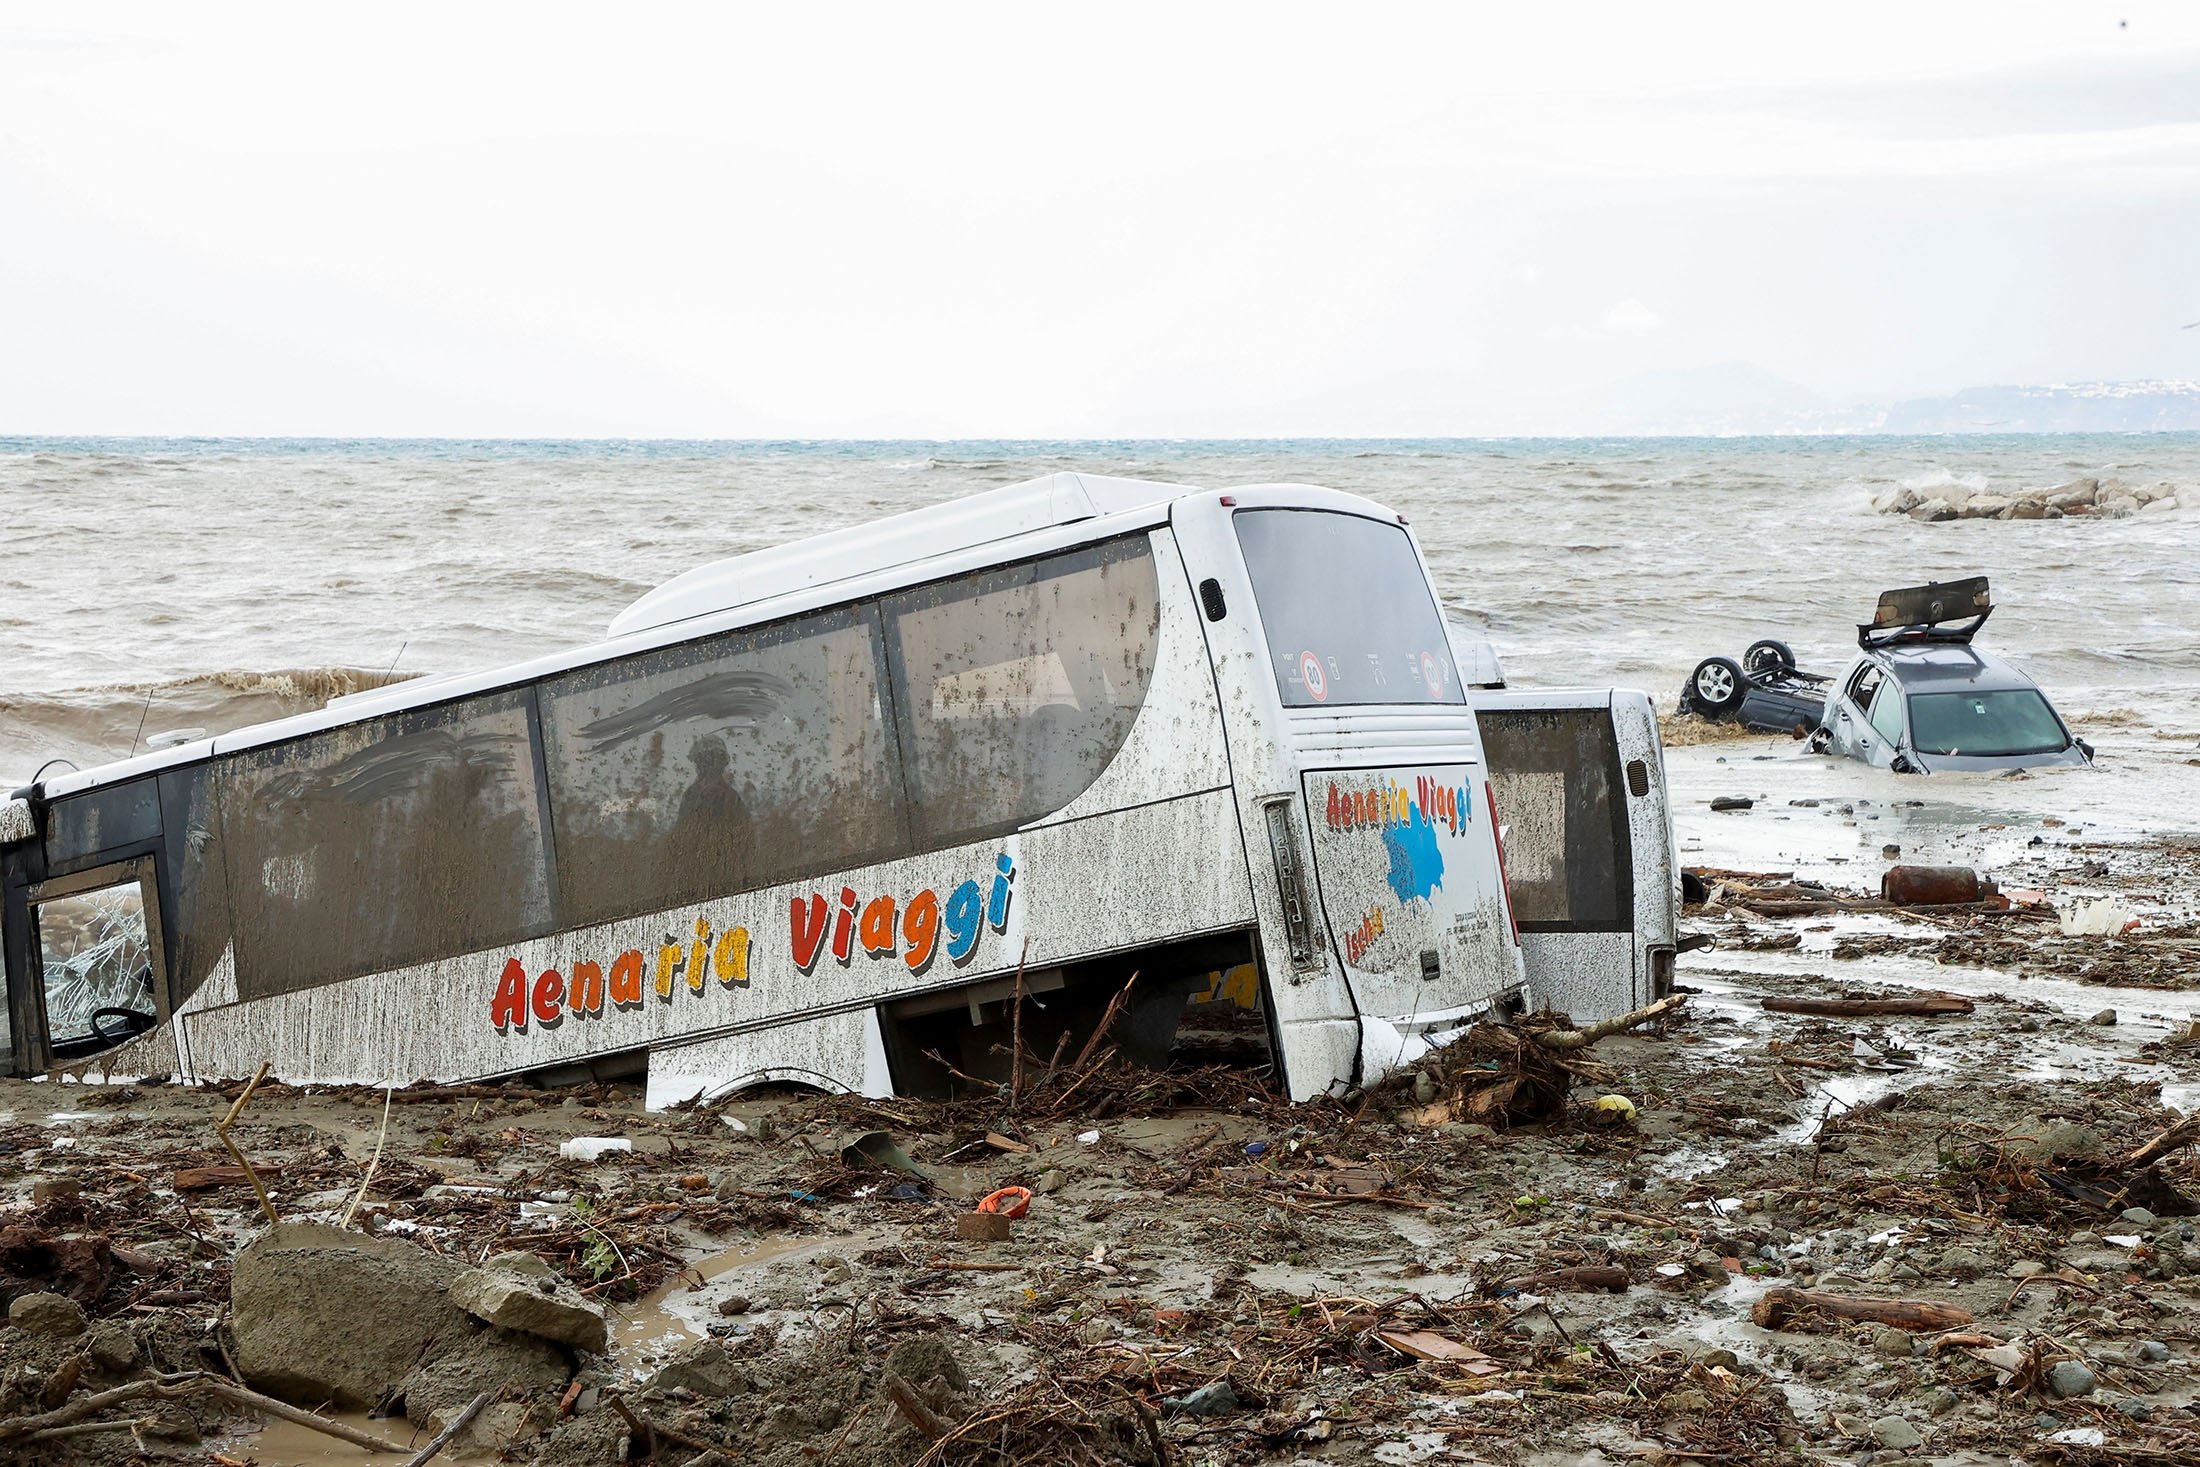 Mobil-mobil rusak terlihat di tepi laut, menyusul tanah longsor di pulau liburan Italia Ischia, Italia, 26 November 2022. (Foto Reuters)